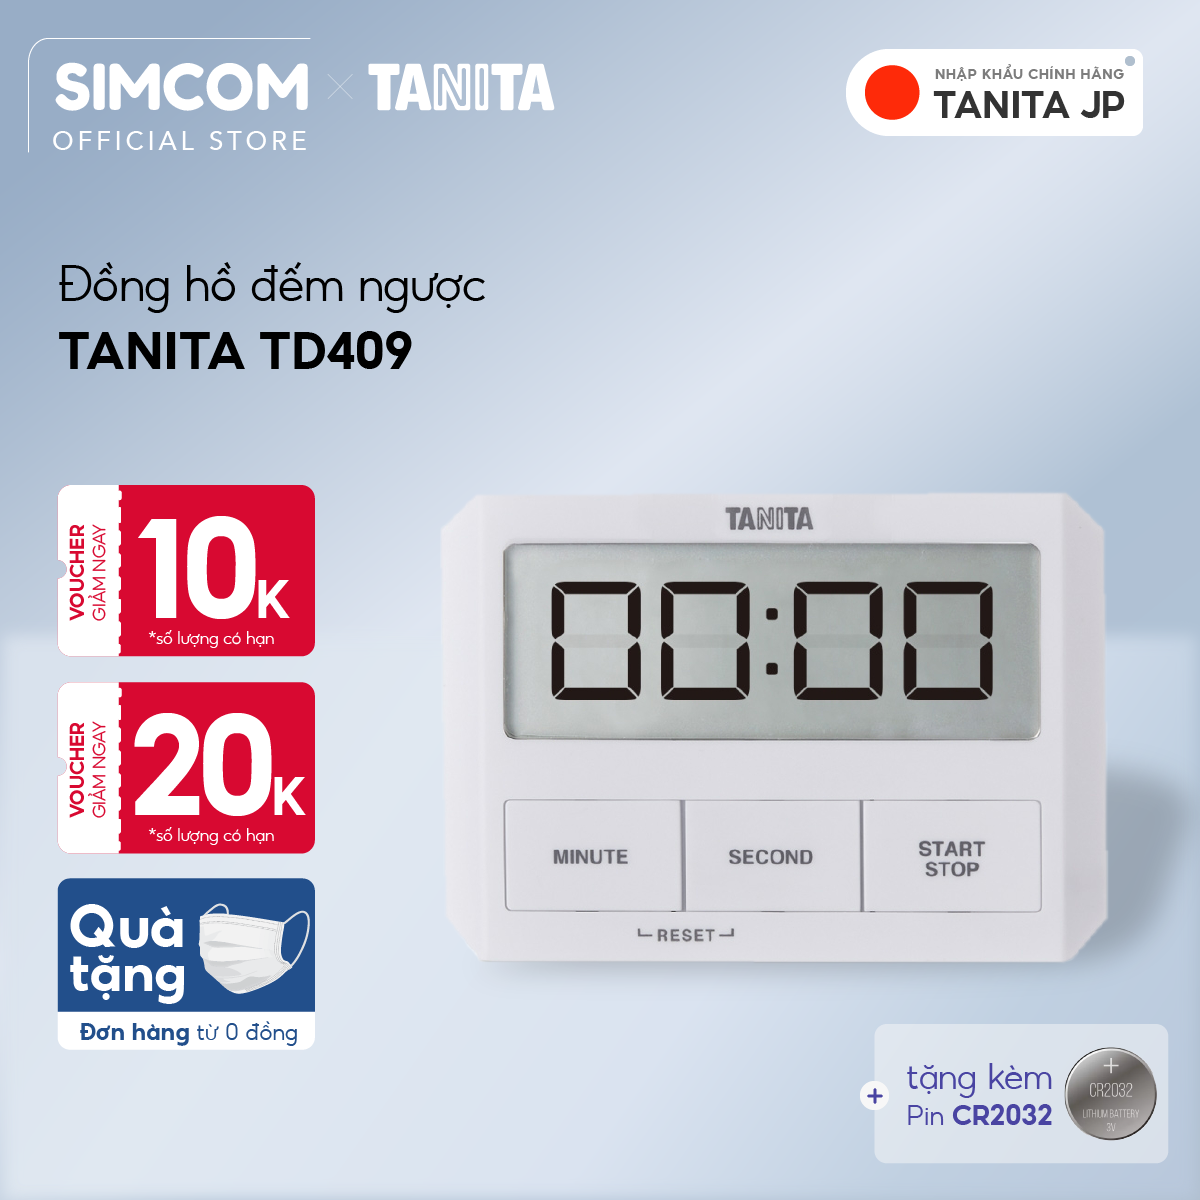 Đồng hồ đếm ngược Tanita TD409 Nhật Bản,Đồng hồ mini đếm ngược bấm giờ,Đồng hồ mini bấm giờ,Đồng hồ hẹn giờ,Đồng hồ bếp,Đồng hồ đếm ngược thời gian,đồng hồ bấm giờ đếm ngược,Đồng hồ điện tử đếm giờ,Đồng hồ điện tử đếm ngược